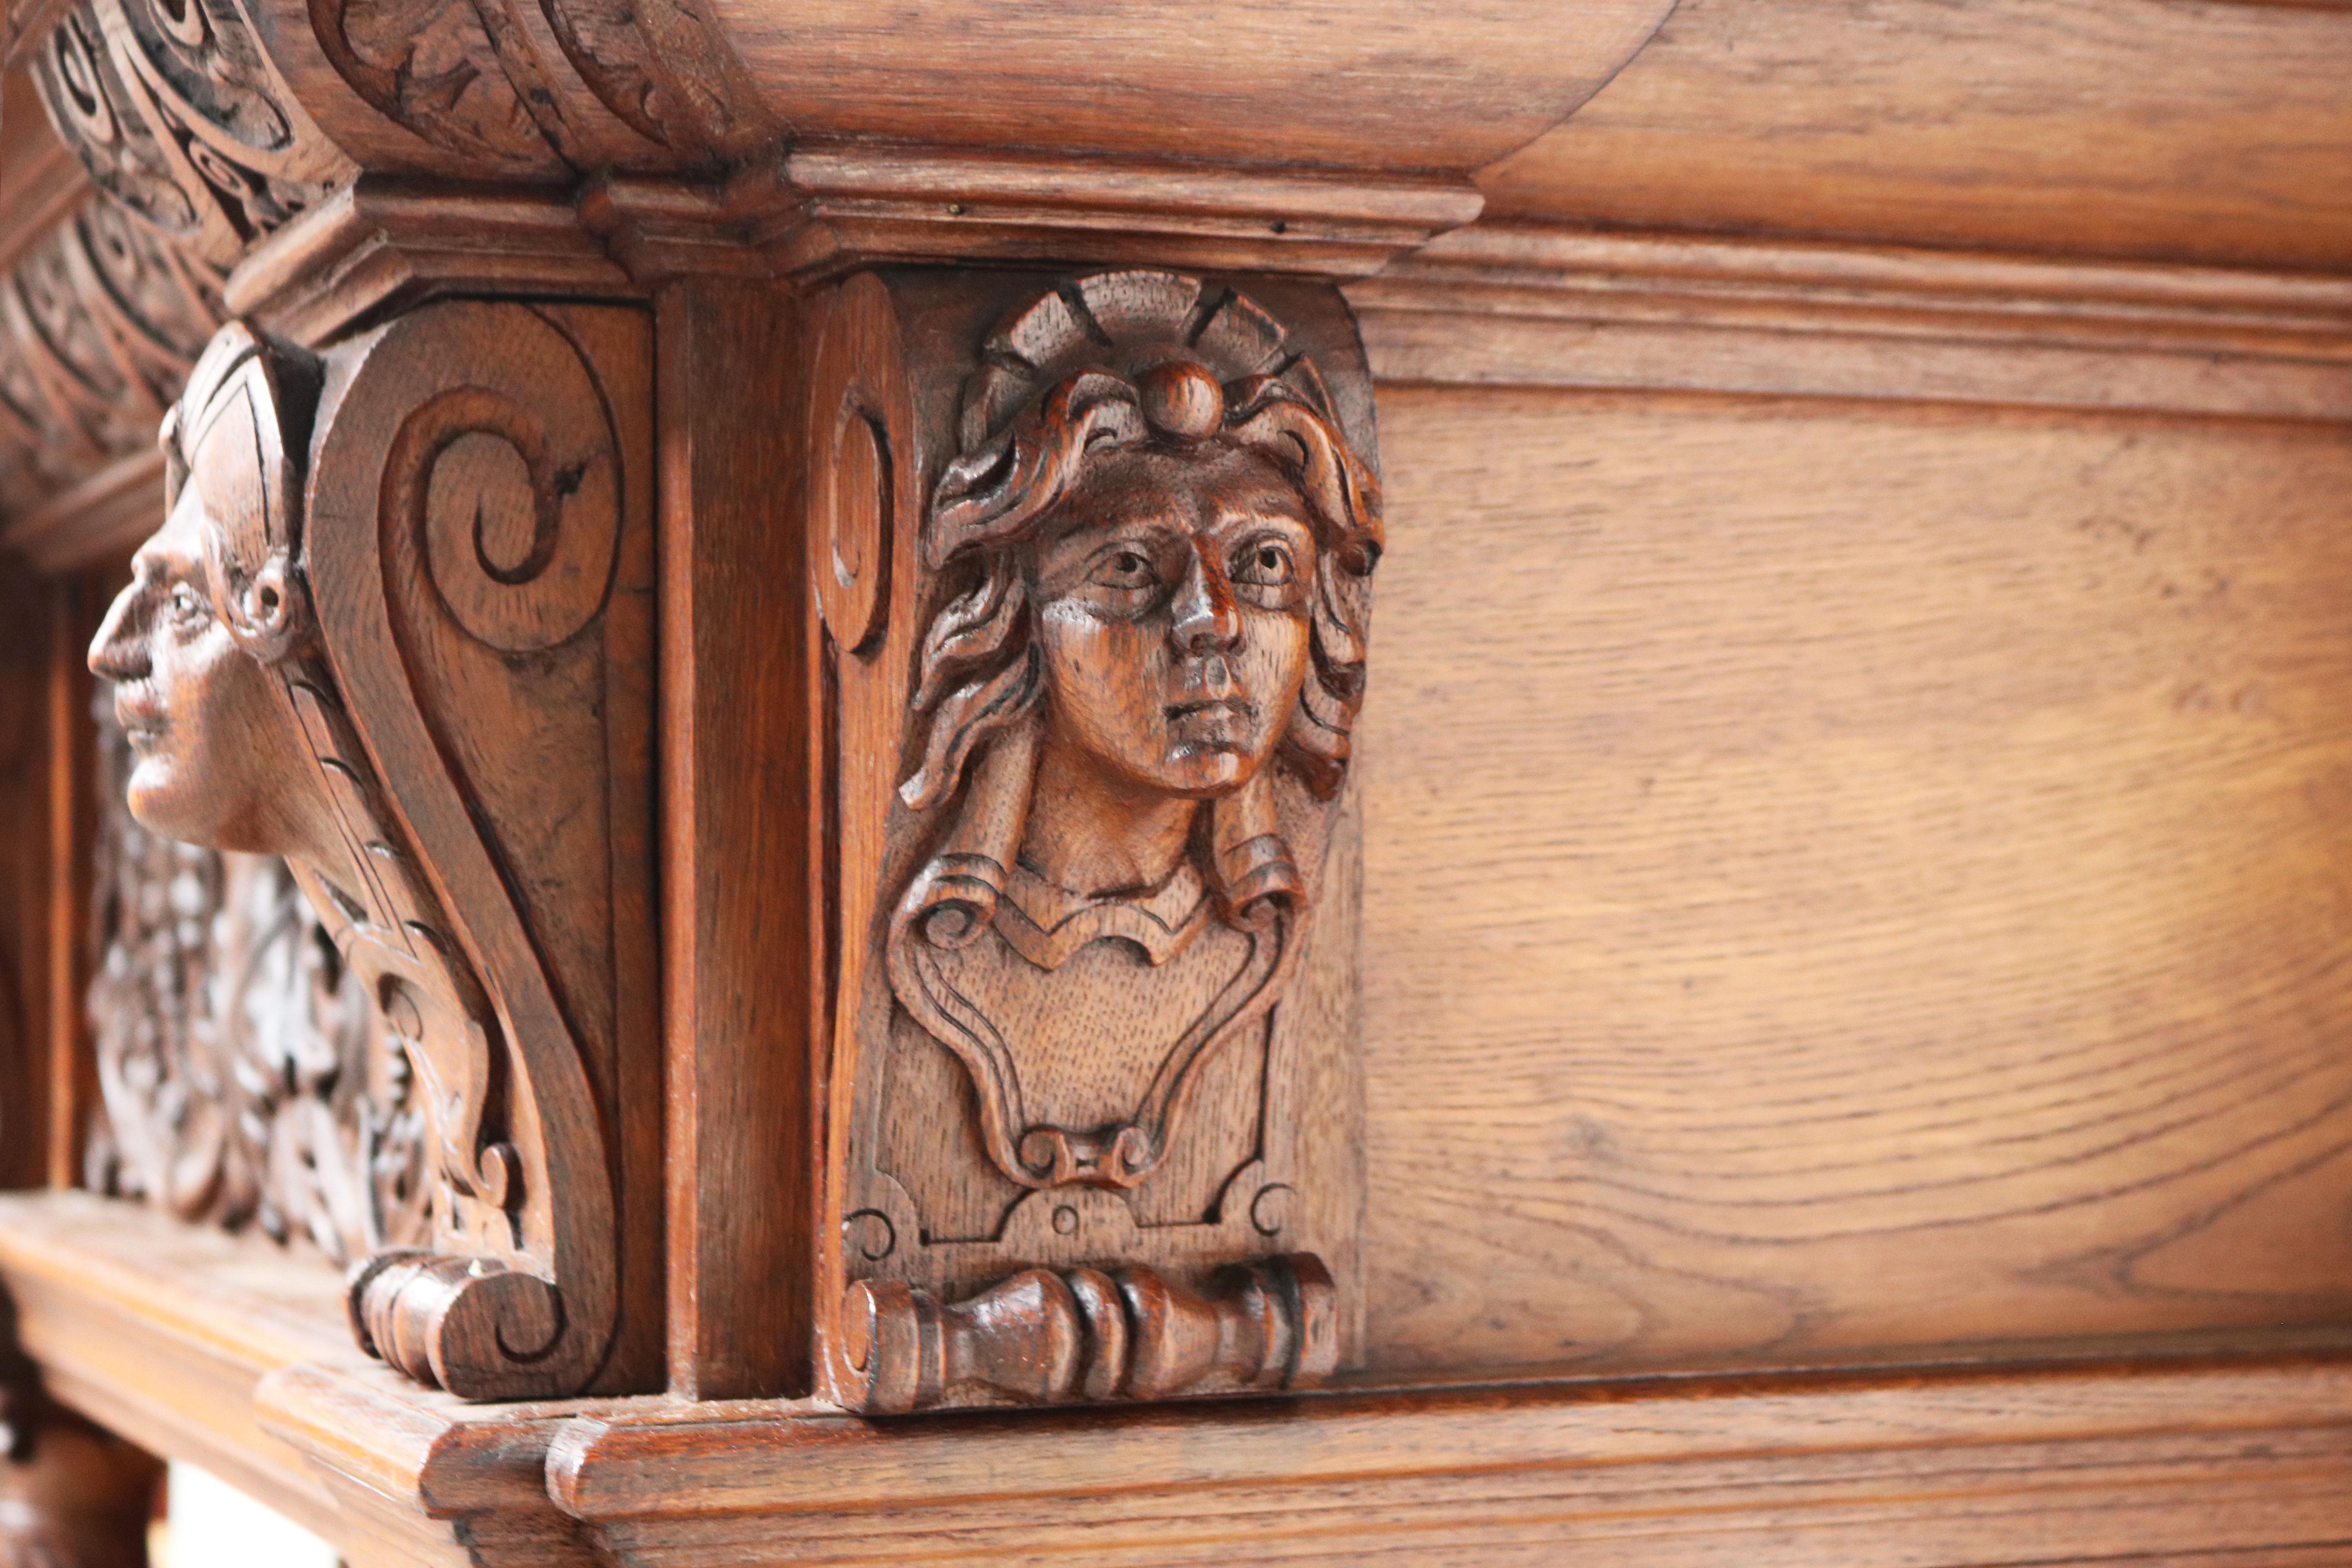 Impressive Dutch Renaissance Revival 19th Century Cabinet Carved Angels & Lions For Sale 3